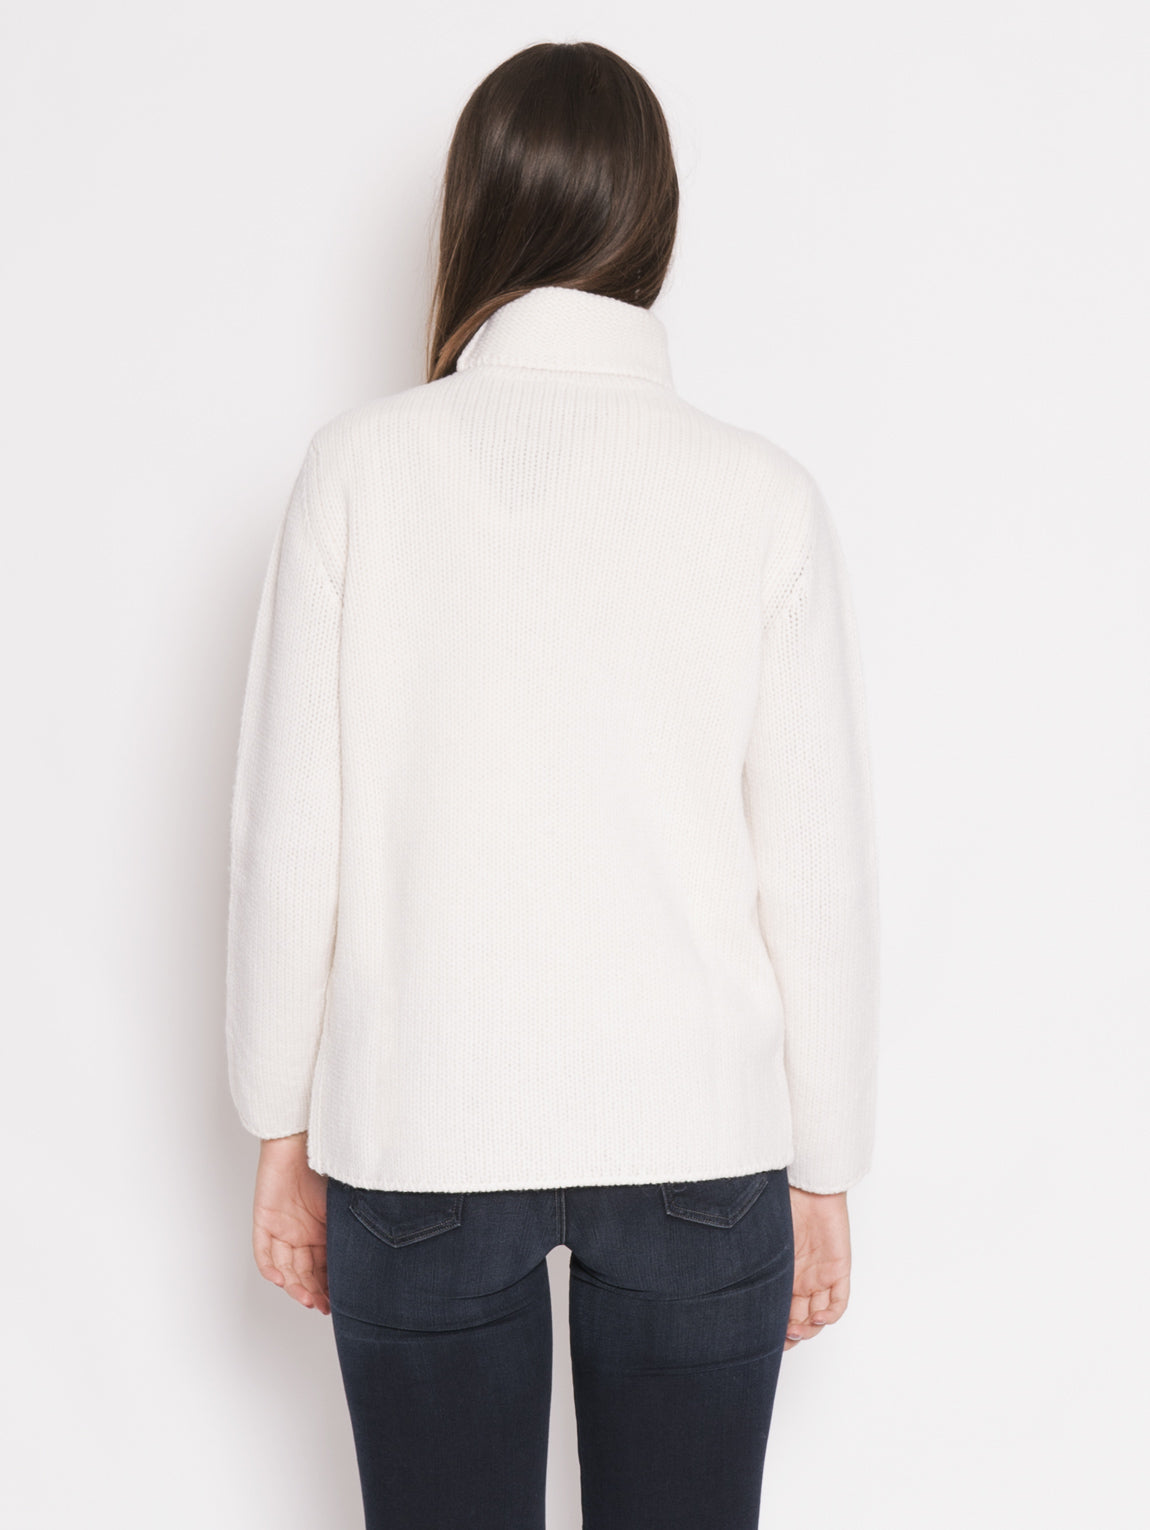 Pullover mit weißer geflochtener Vorderseite